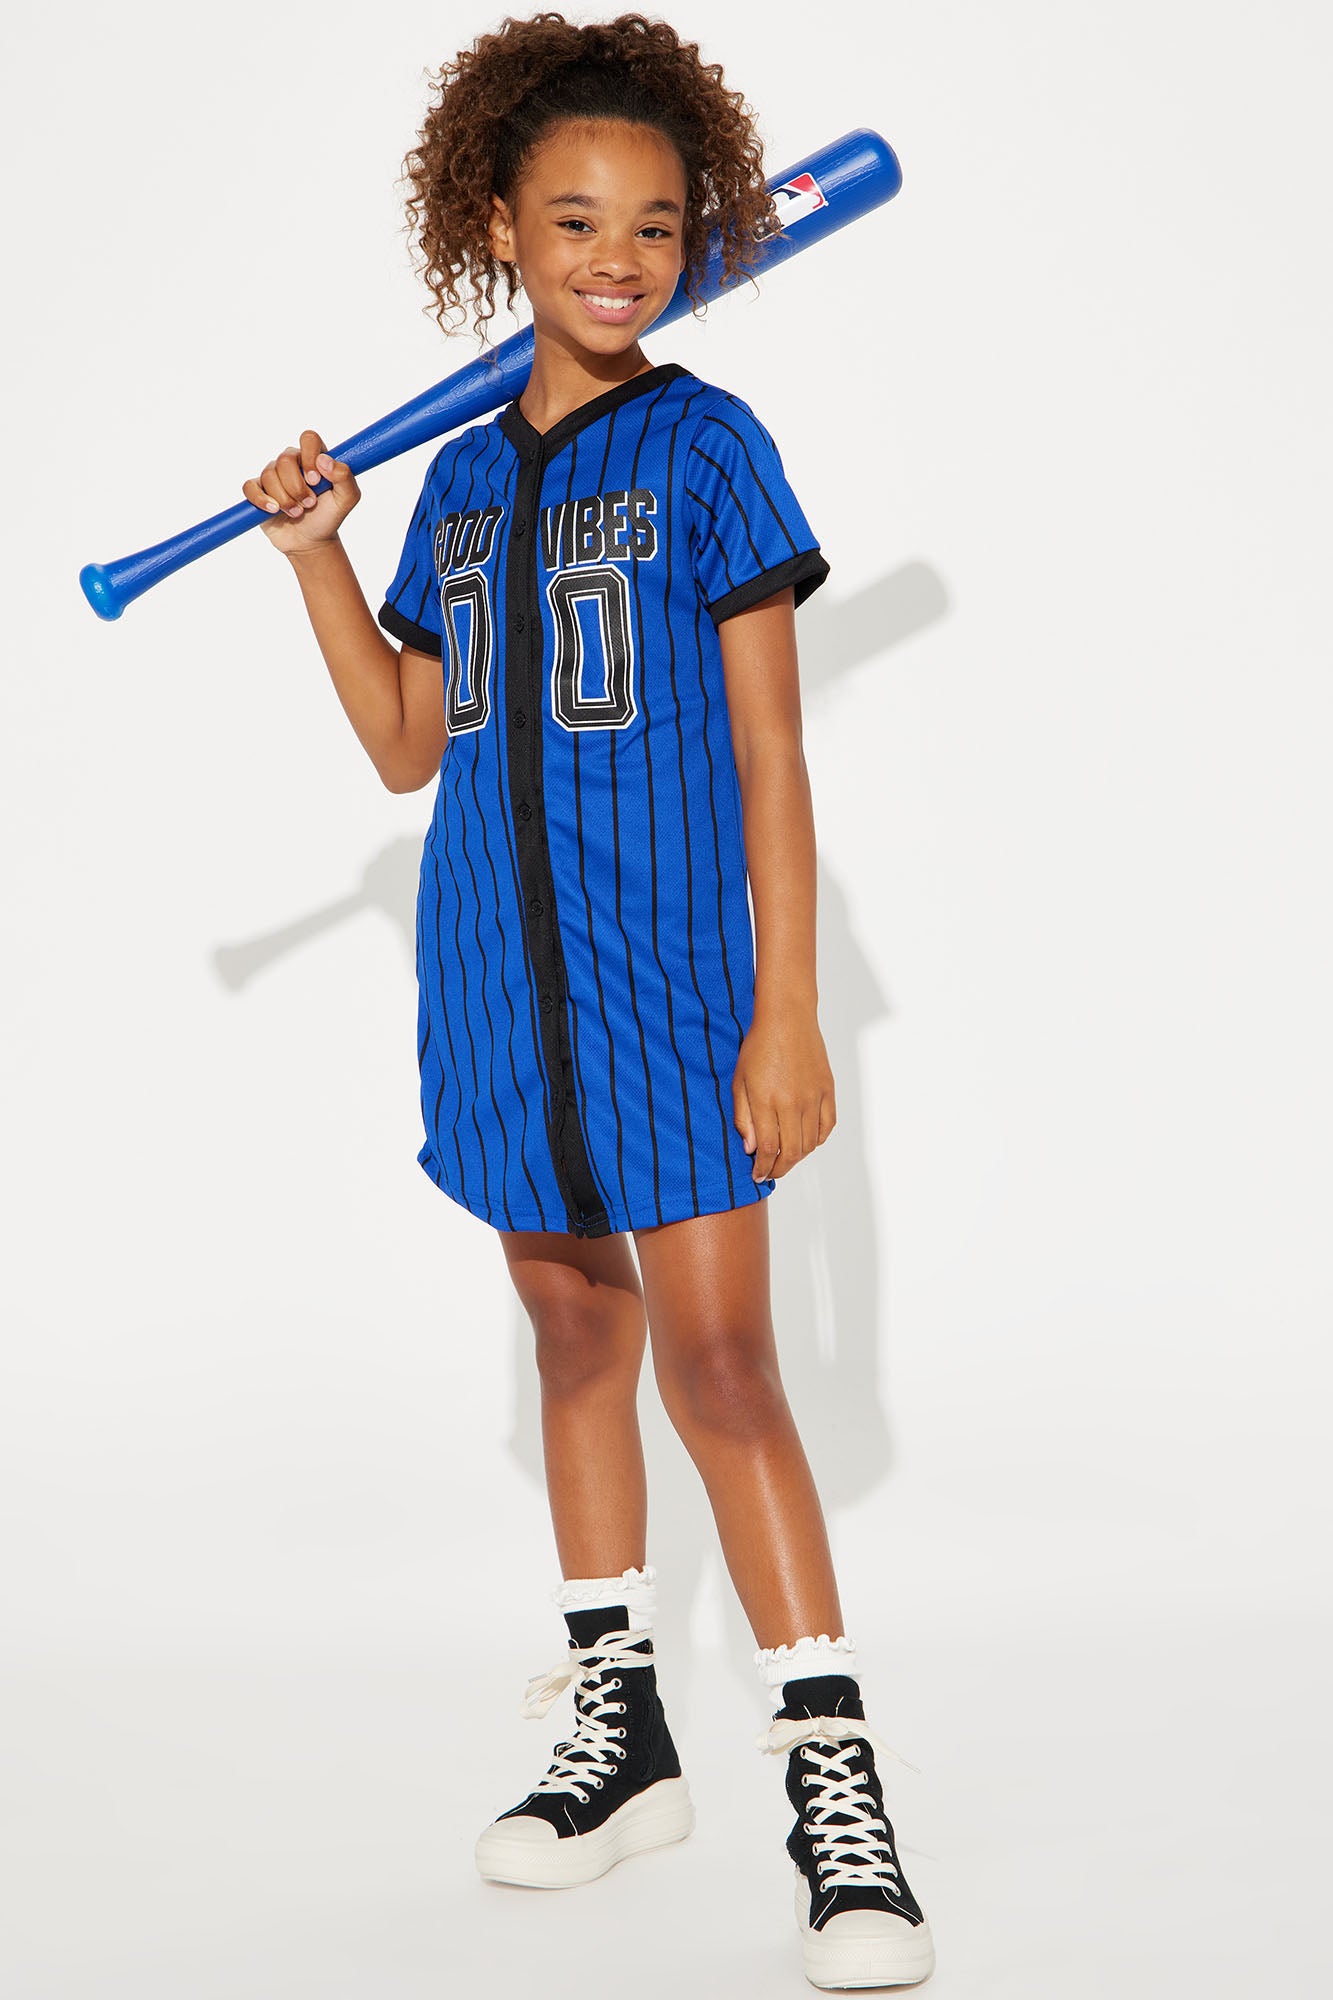 Mini Good Vibes Mesh Knit Baseball Jersey Dress - Blue/Black, Fashion  Nova, Kids Dresses